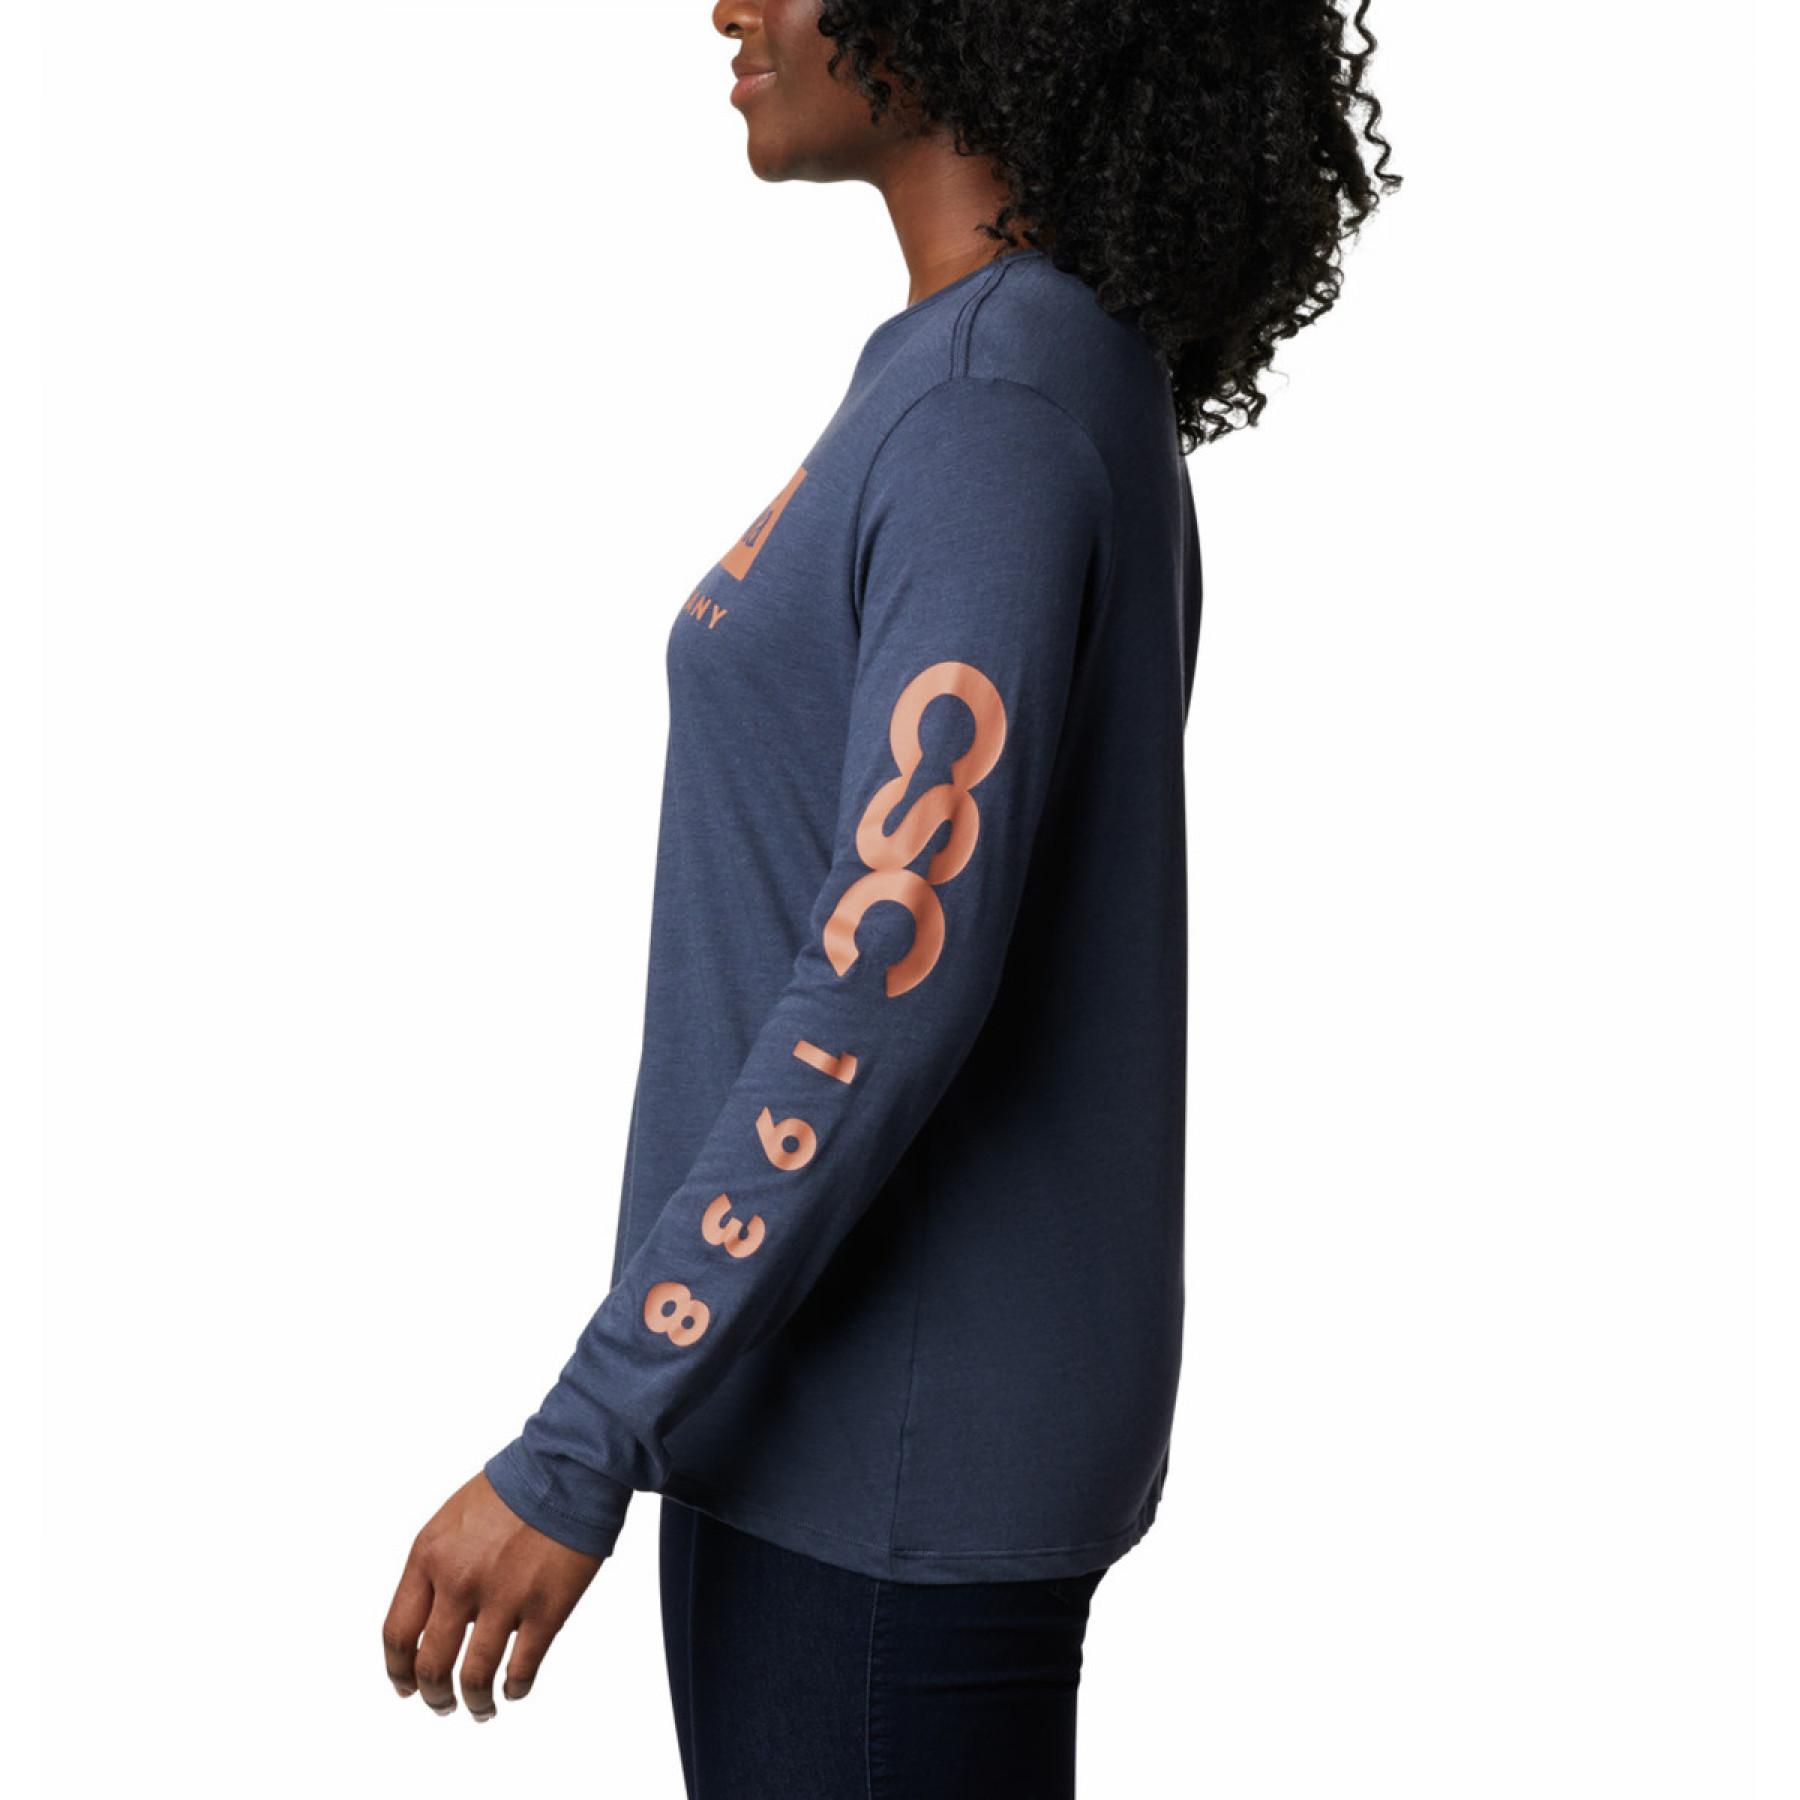 Långärmad T-shirt för kvinnor Columbia Autumn Trek